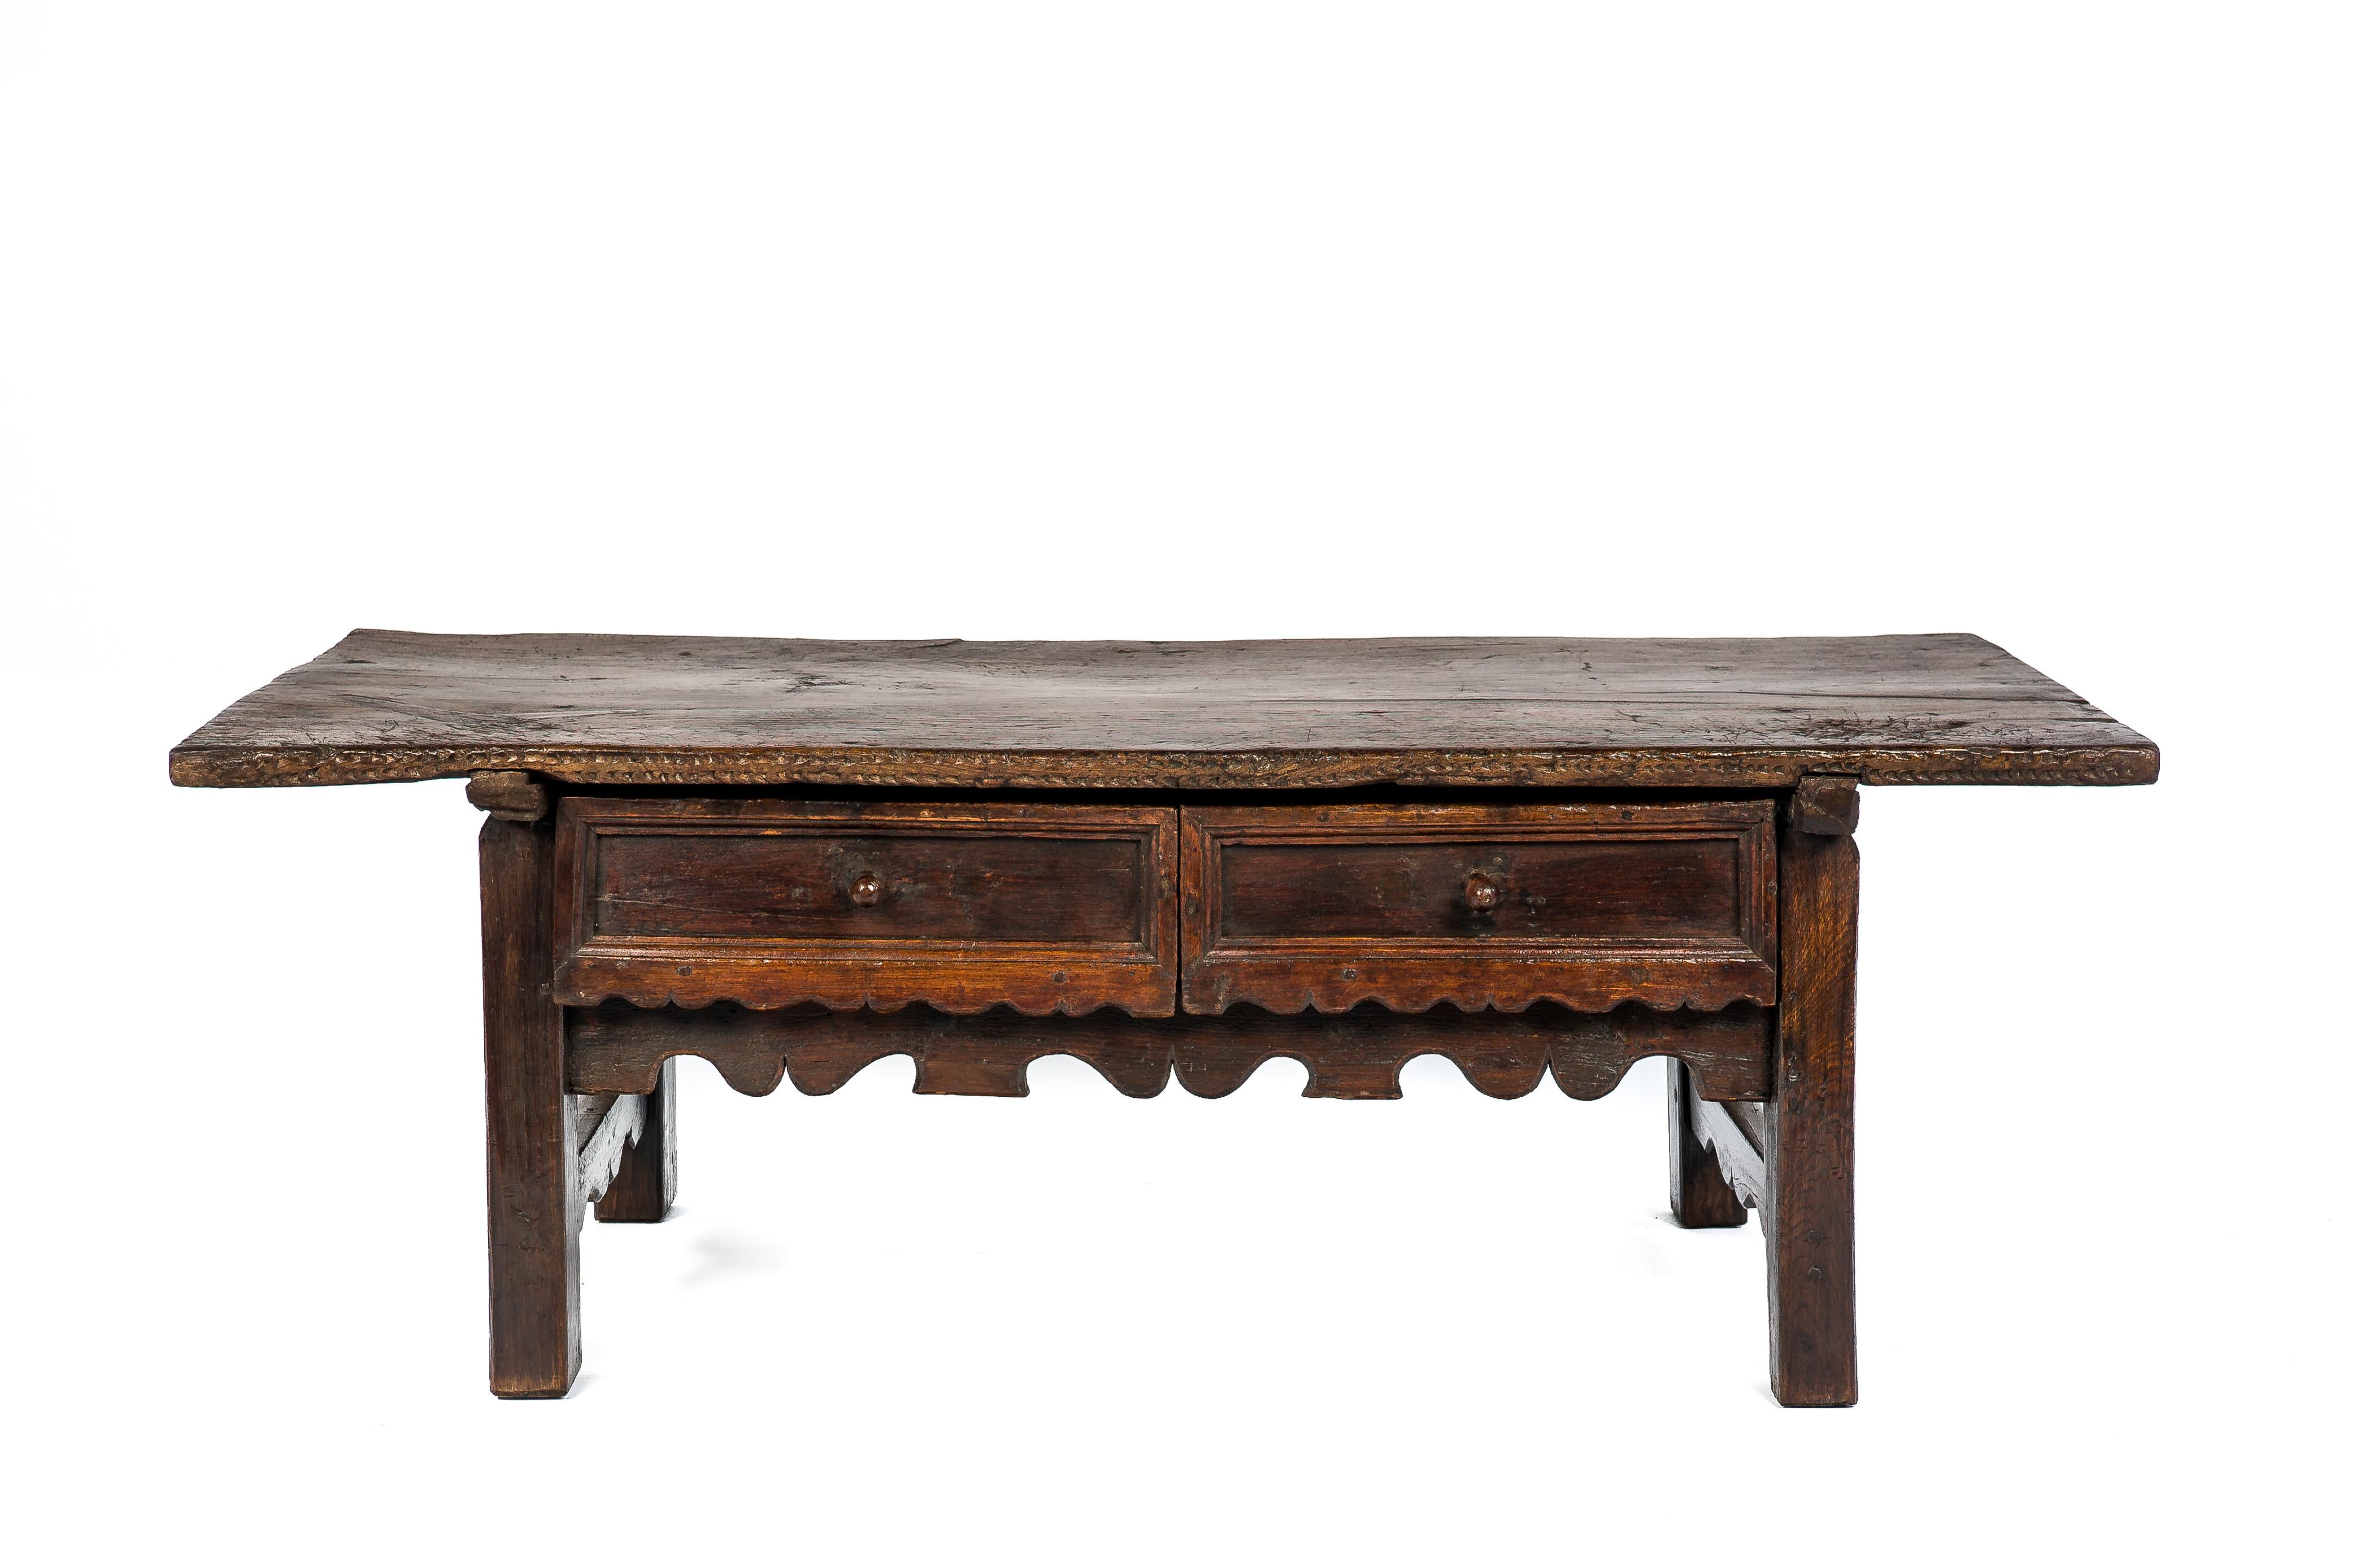 Esta hermosa mesa se fabricó en España a principios del siglo XVIII. Se fabricó completamente en castaño macizo. La parte superior está hecha de una sola pieza de madera y presenta un intrincado veteado. La parte superior se unía a la base mediante